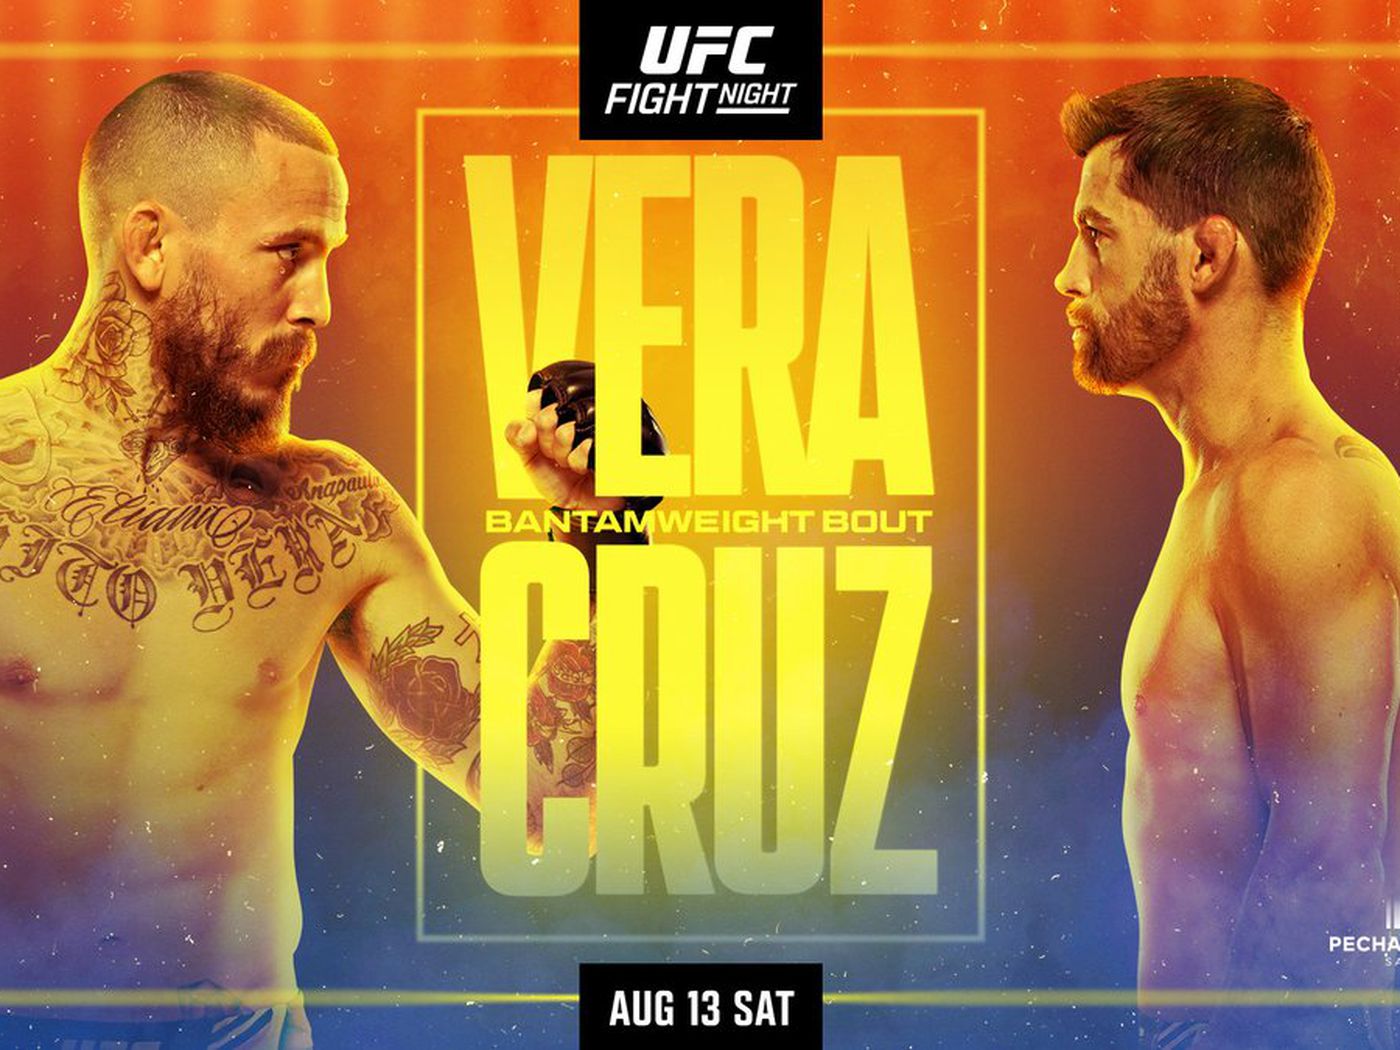 UFC San Diego: Vera vs. Cruz